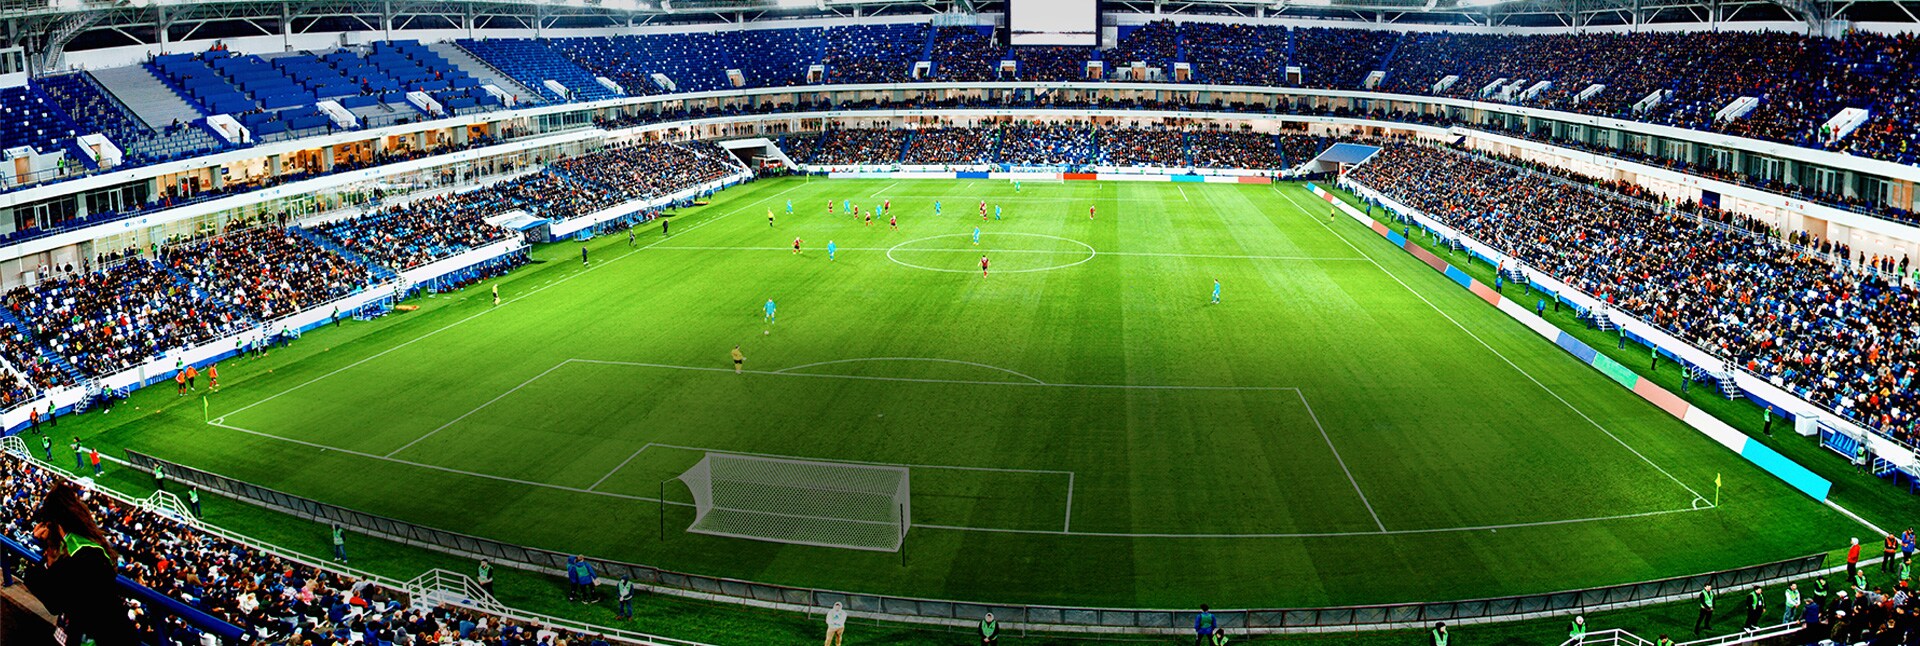 Pogled na stadion iz visine uz tipku s poveznicom